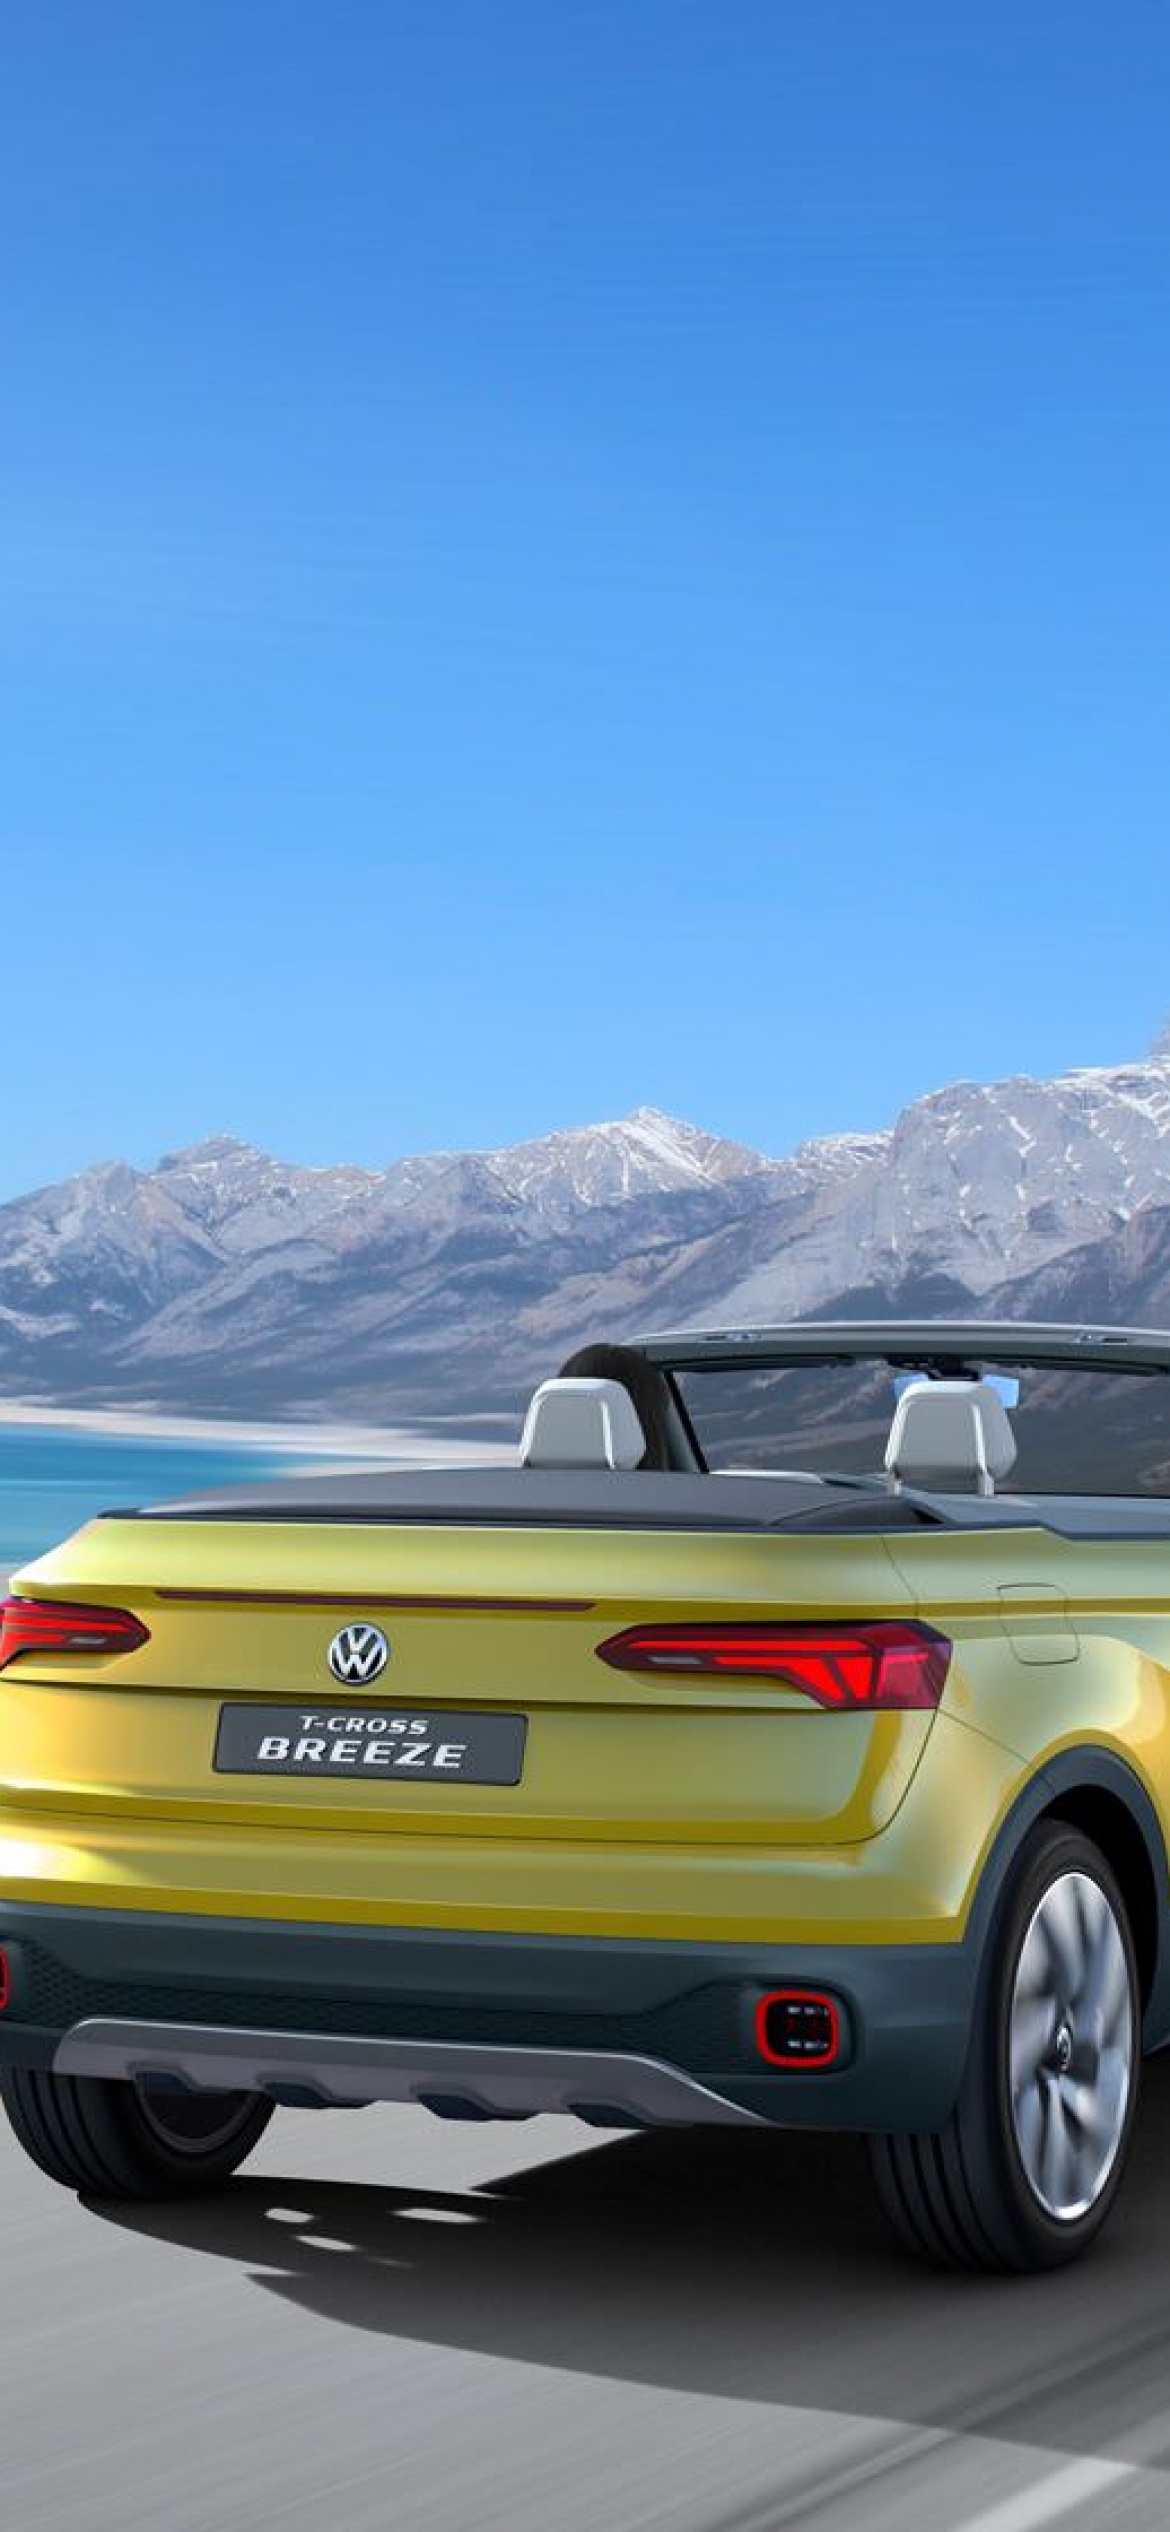 Volkswagen T-Cross, HD pictures, 2020 model, Car wallpaper, 1170x2540 HD Phone